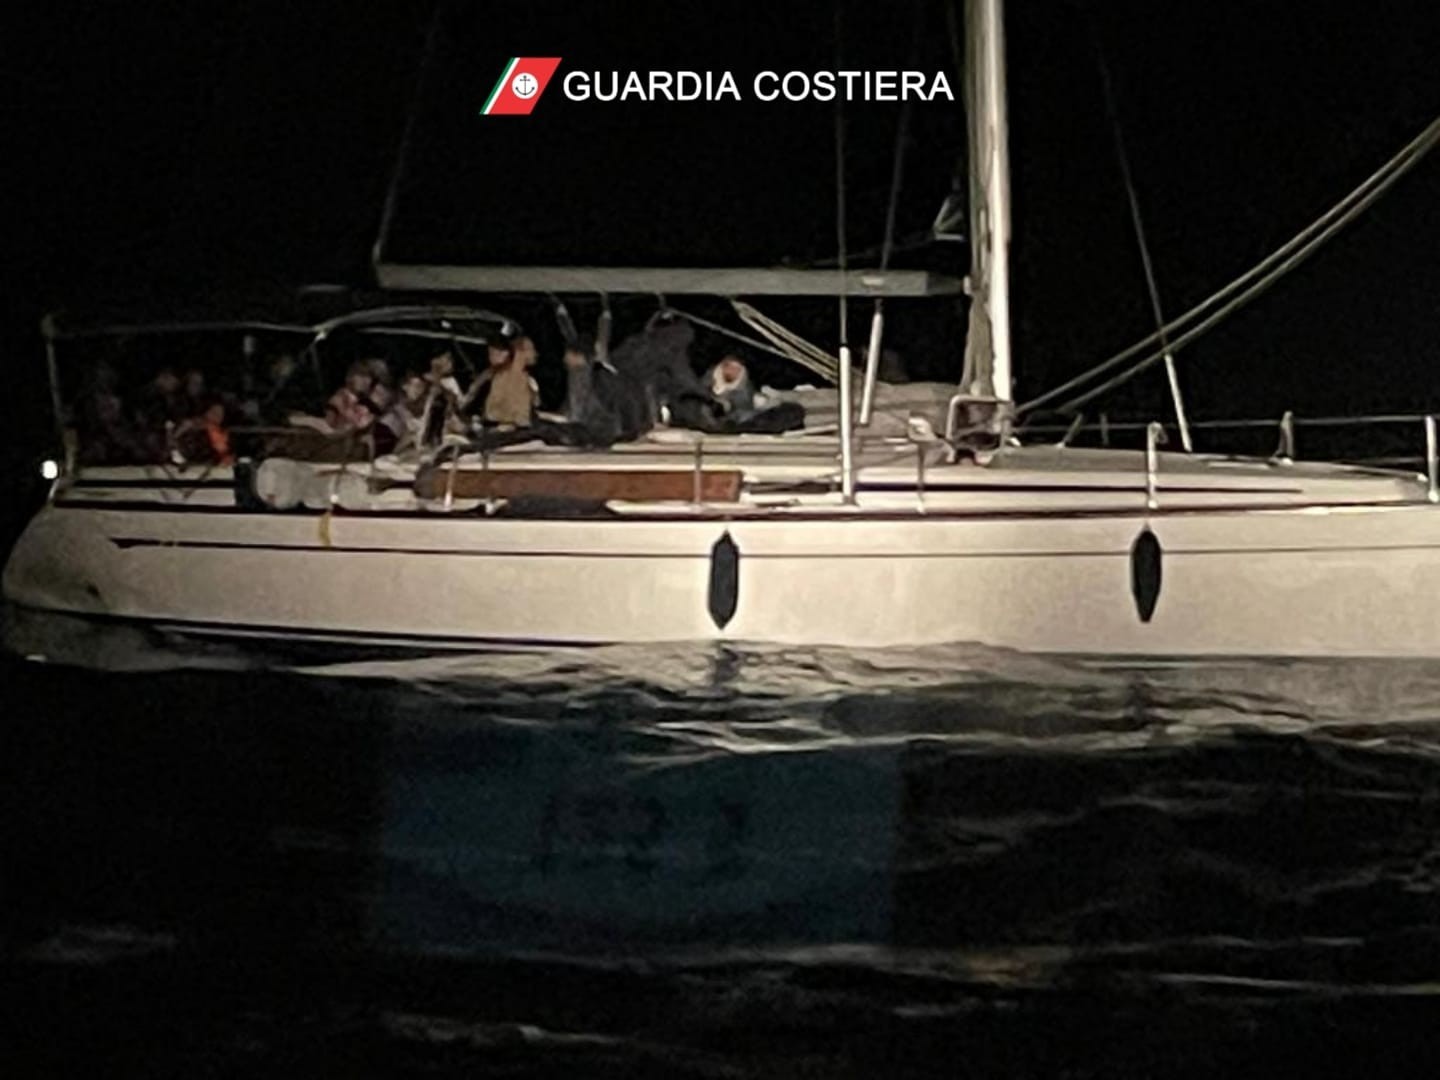 La Guardia Costiera salva 96 migranti su una barca a vela in difficoltà